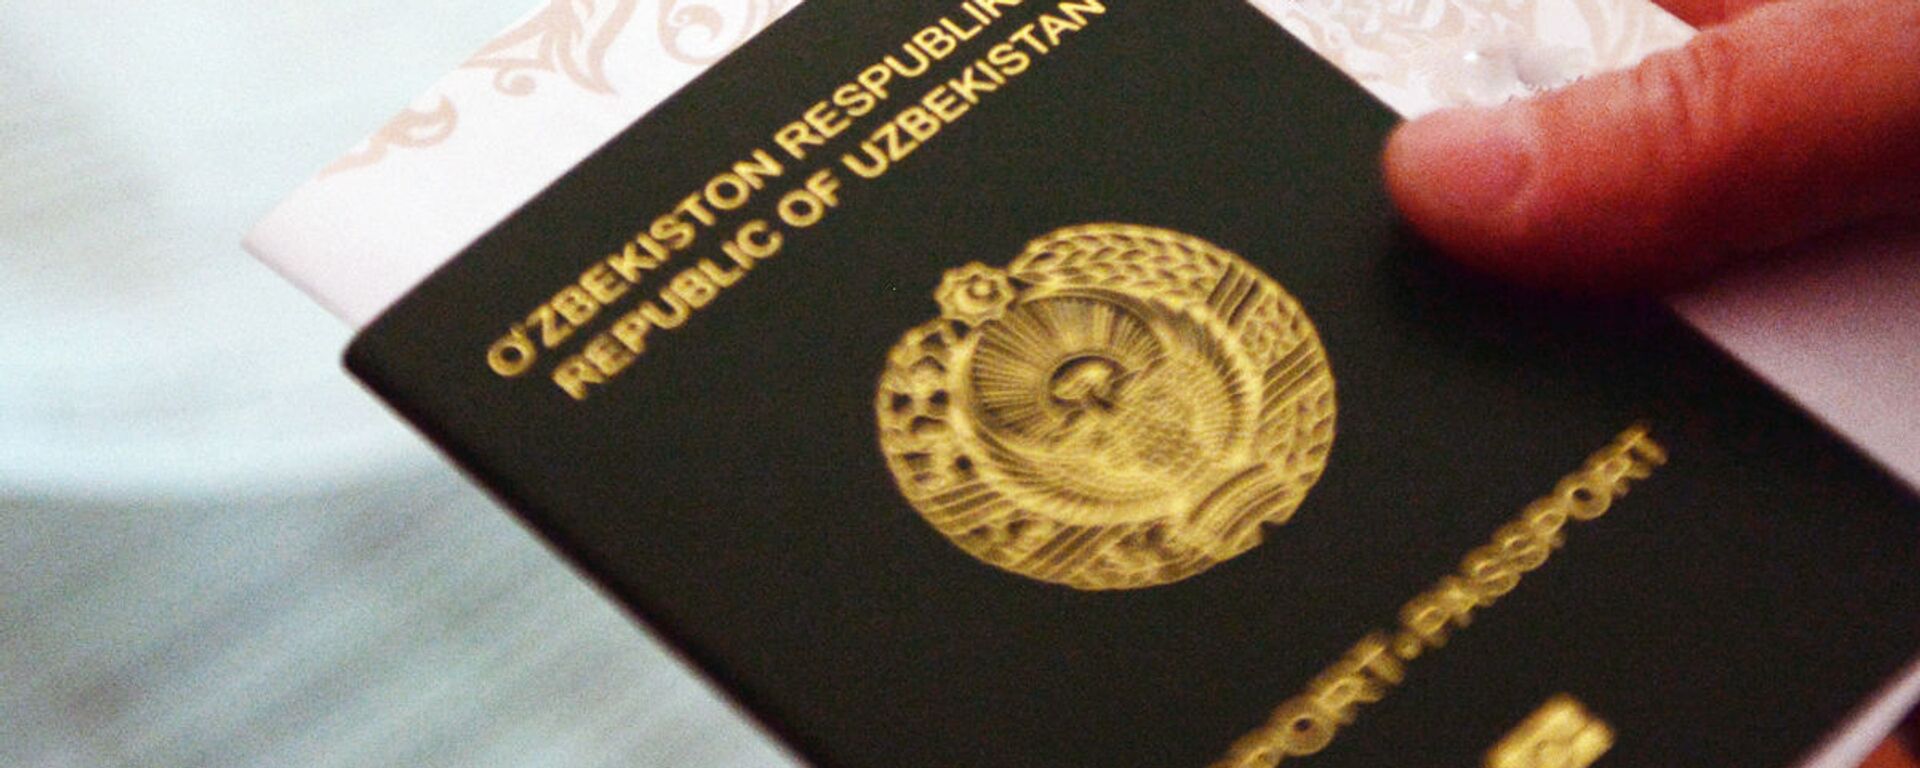 Паспорт гражданина Узбекистана - Sputnik Узбекистан, 1920, 15.09.2020